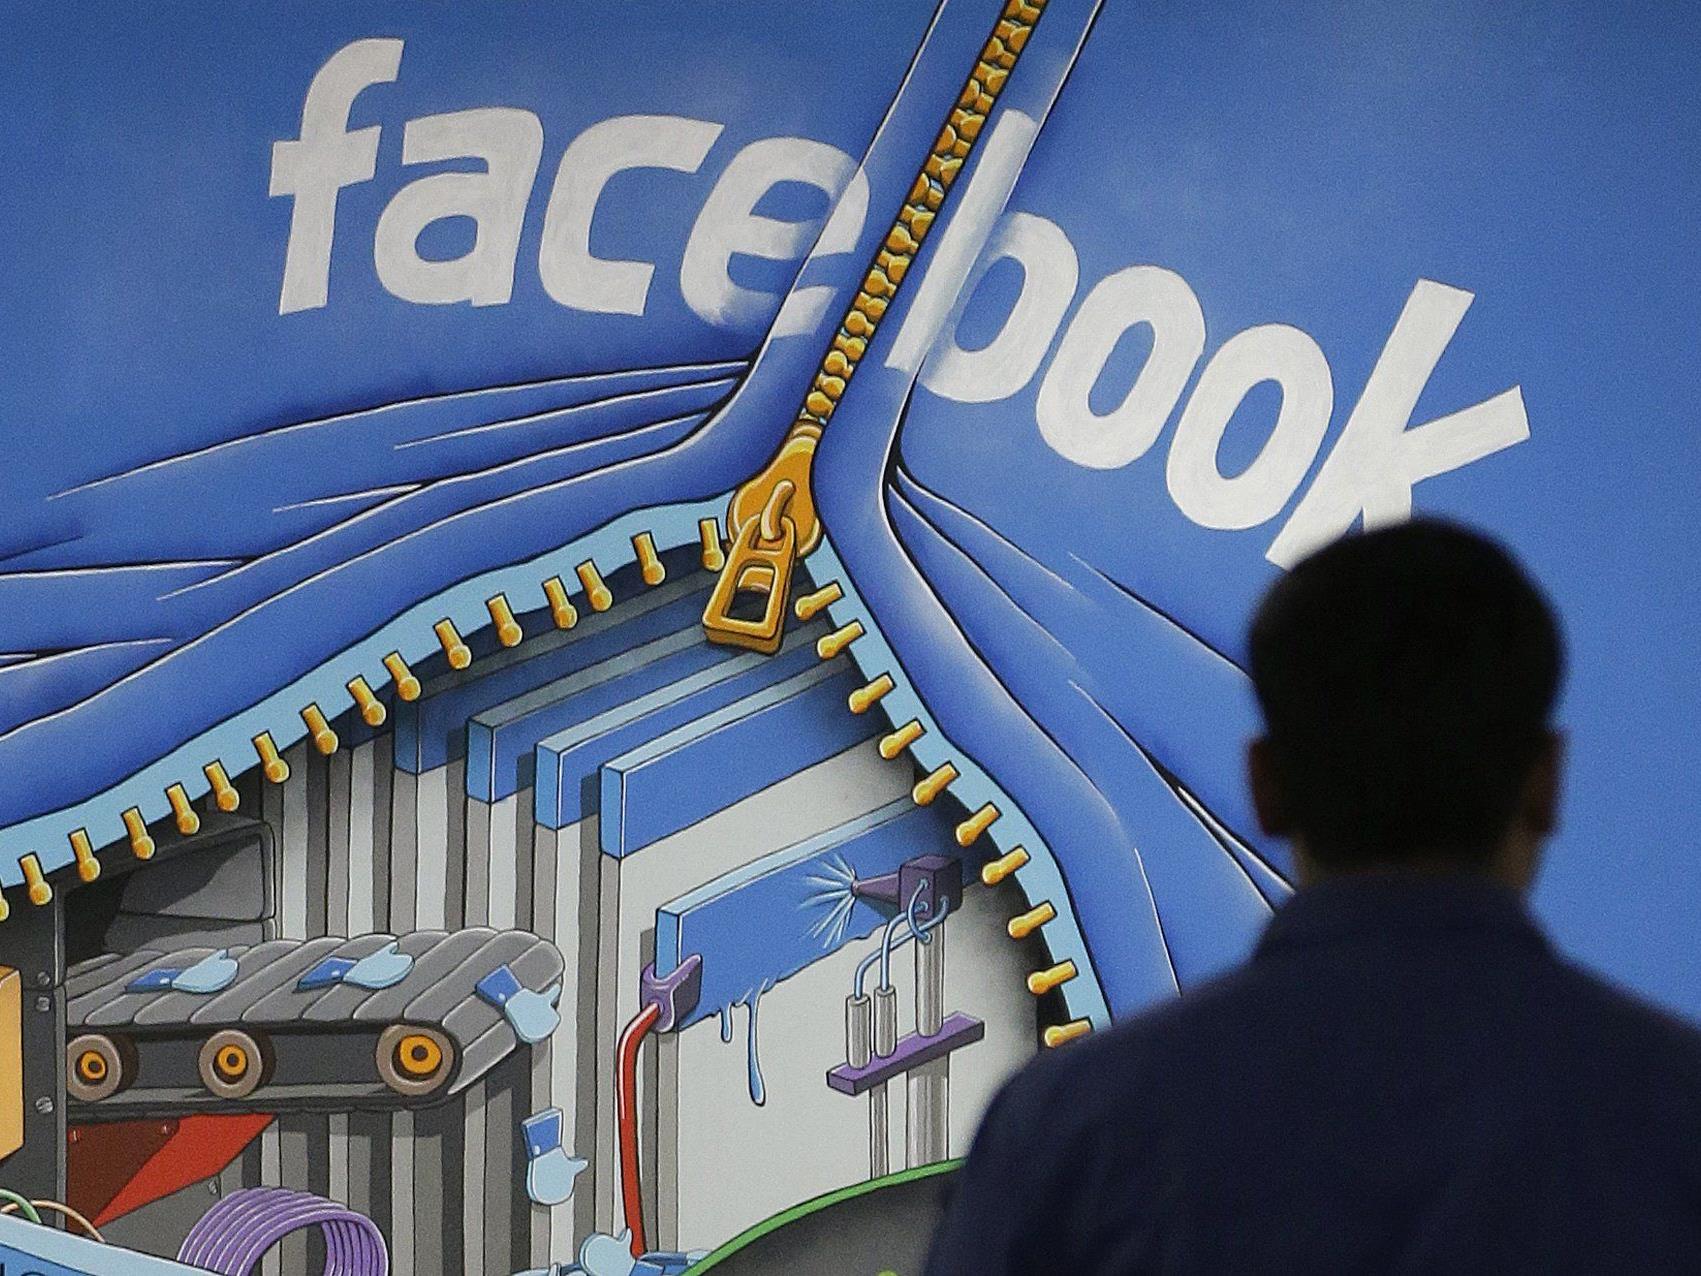 Nach über einem Jahr hat die Facebook-Aktie wieder ihren Ausgangswert erreicht.